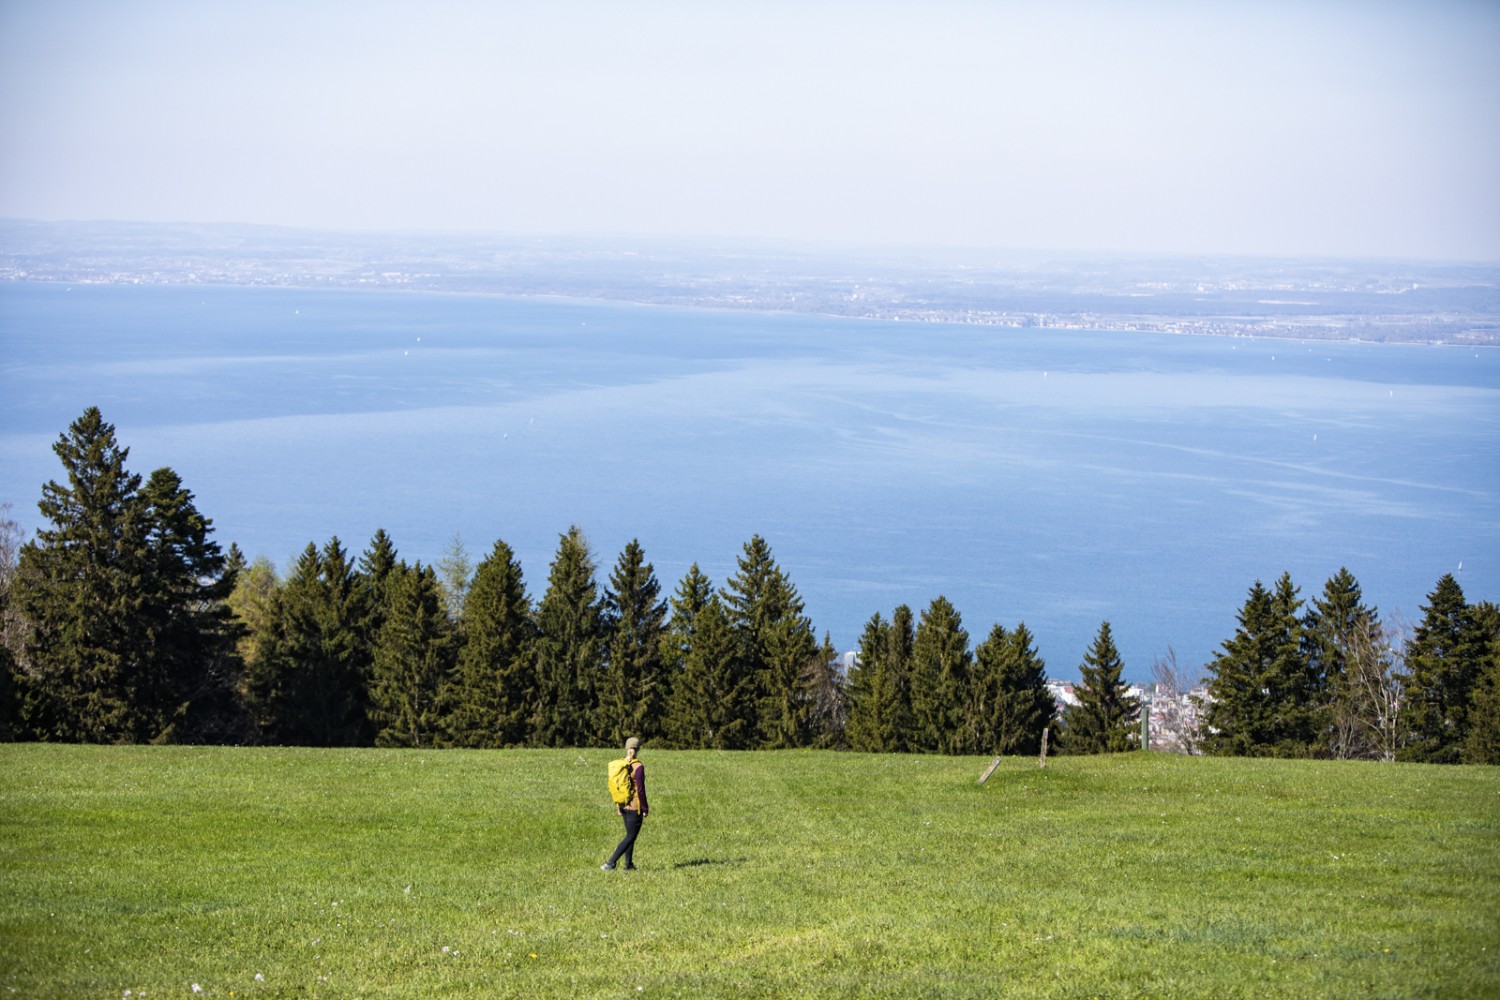 Descente depuis le Kaienspitz. Le lac de Constance s’étend aux pieds des randonneurs. Photo: Wanderblondies